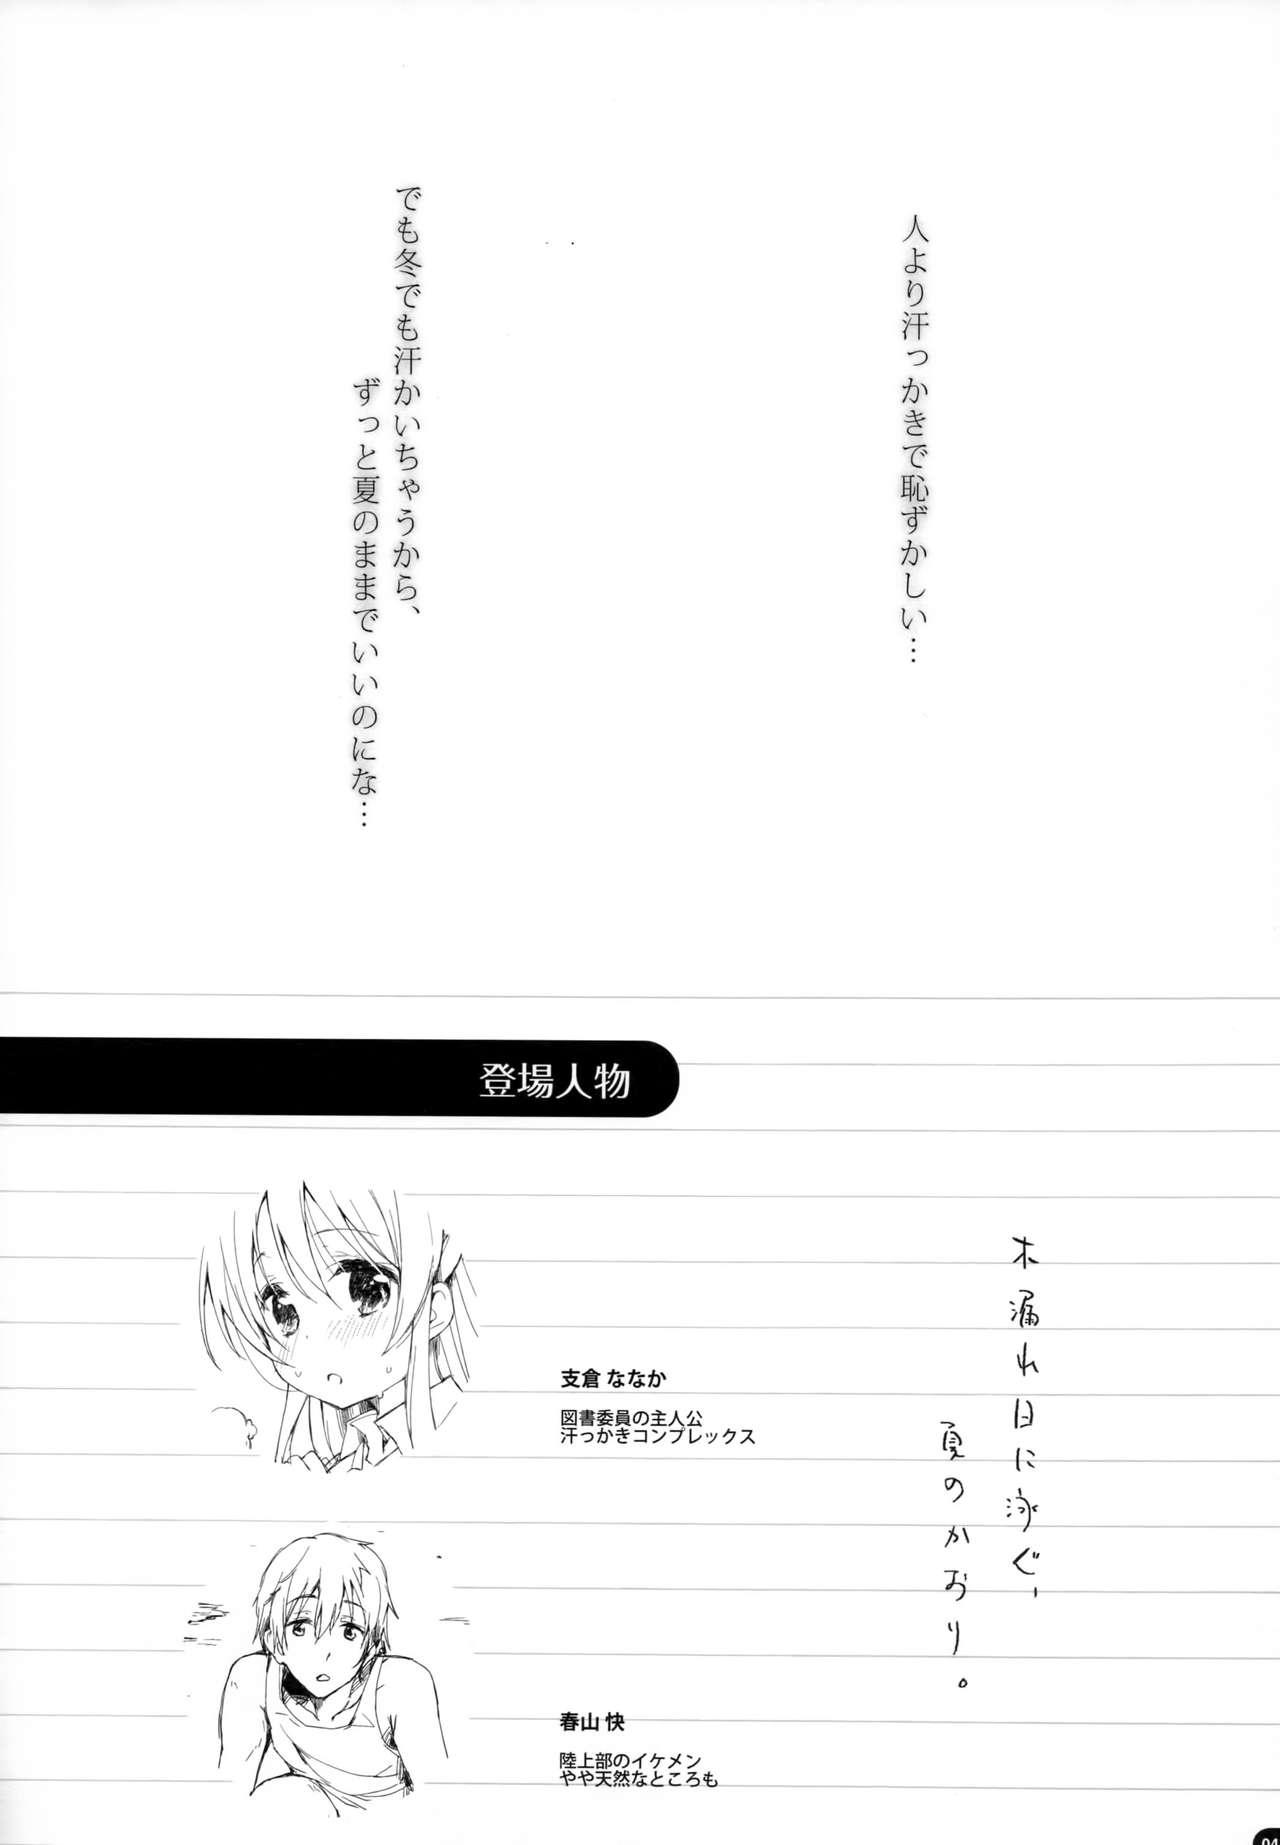 Hardcore Komorebi ni Oyogu, Natsu no Kaori. Sfm - Page 3